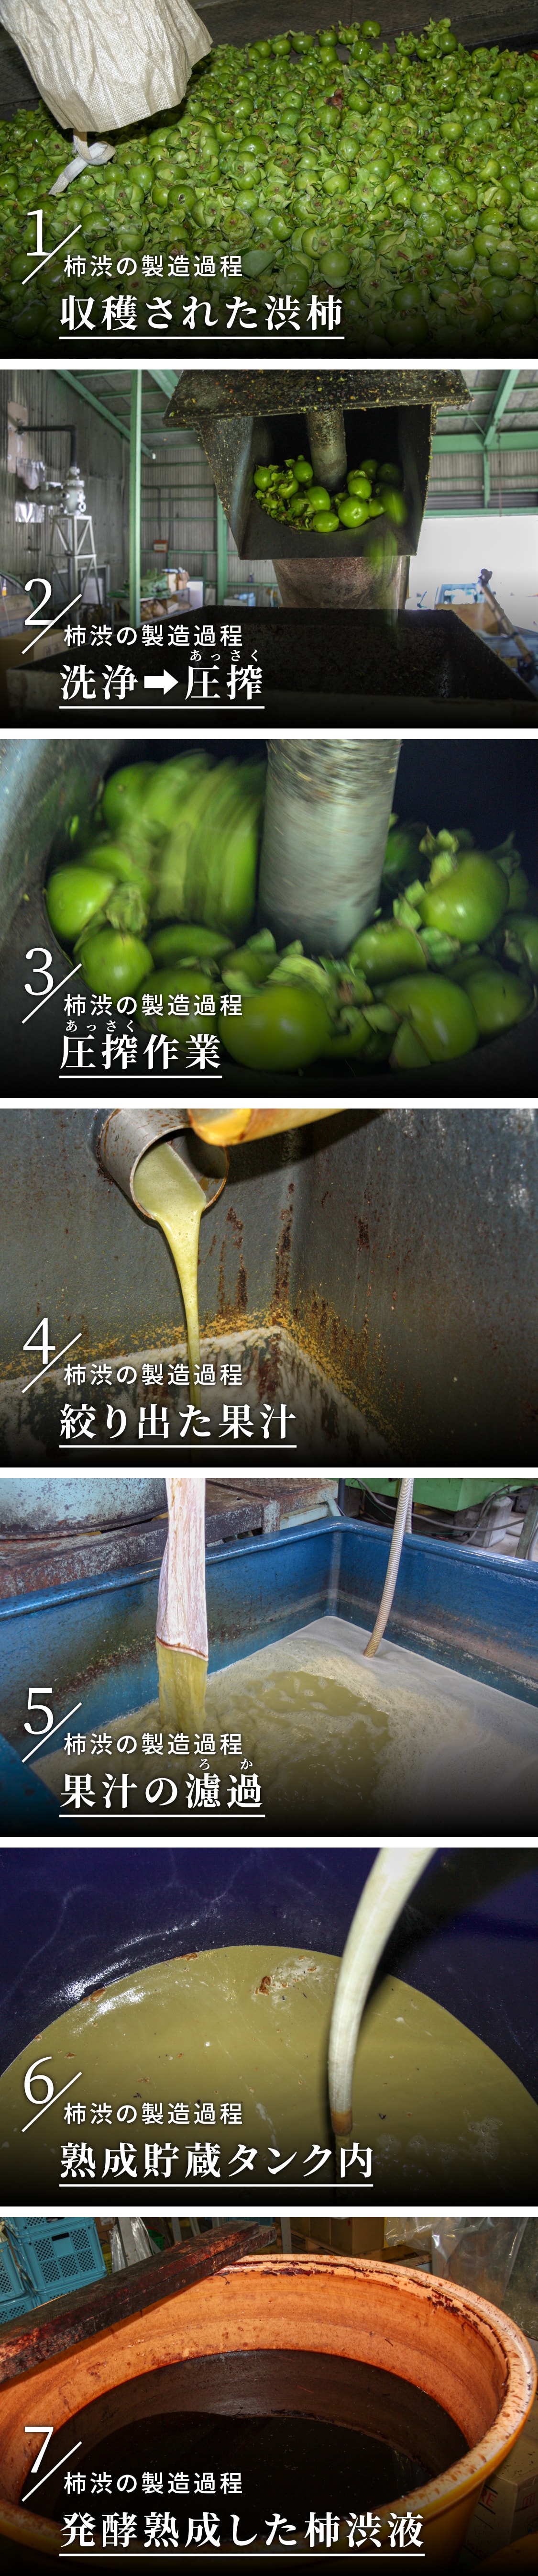 顆粒柿渋 粉末柿渋 100g 袋 袋を溶かすと柿渋液3.3リットル分になります Ooki na Waribiki - 素材/材料 -  edmontonquotient.com